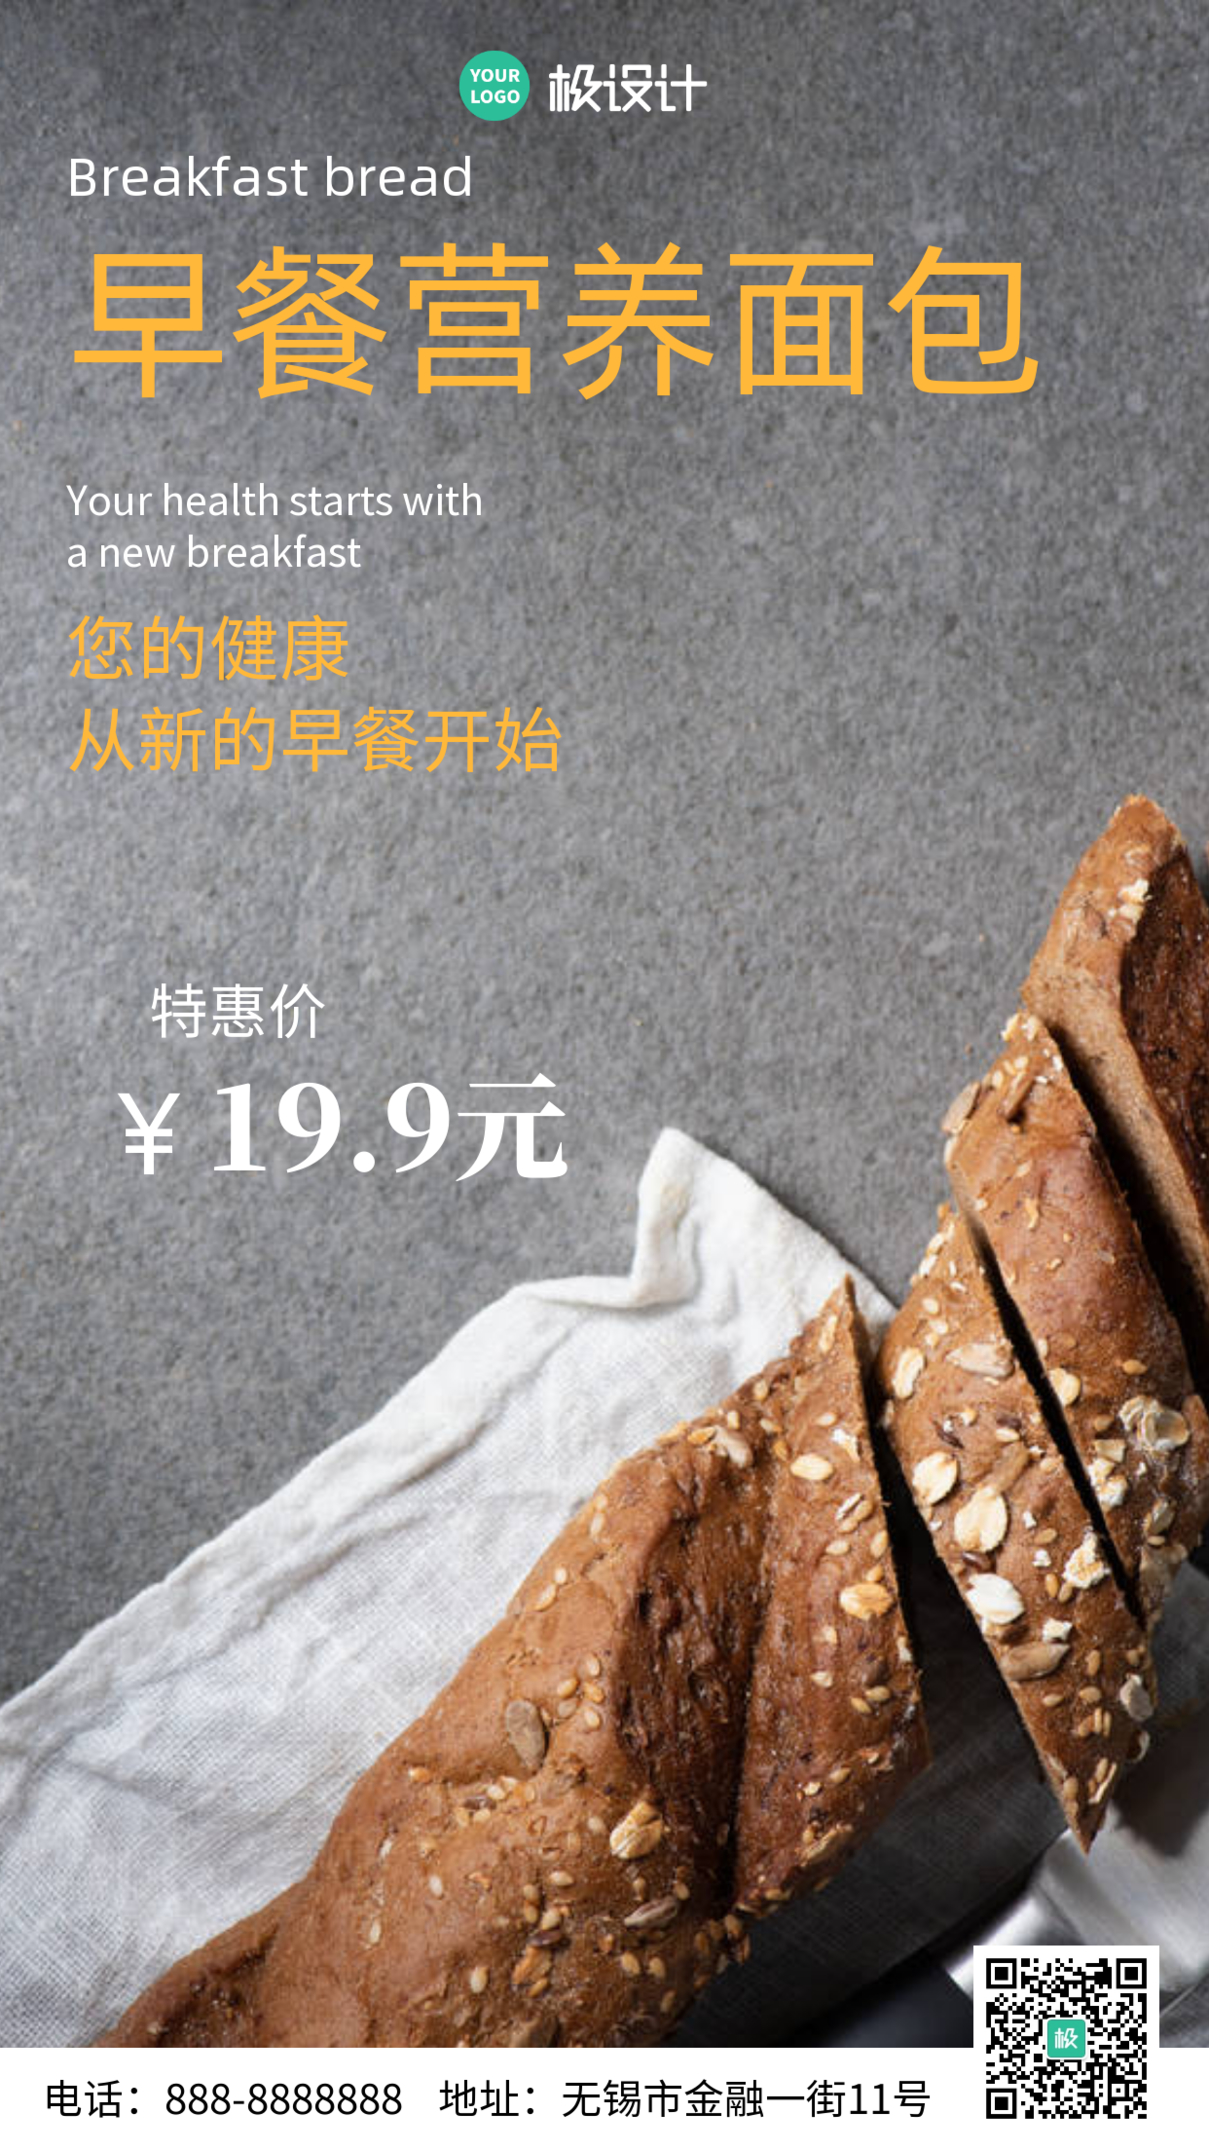 面包实体店产品宣传简约大气手机宣传海报